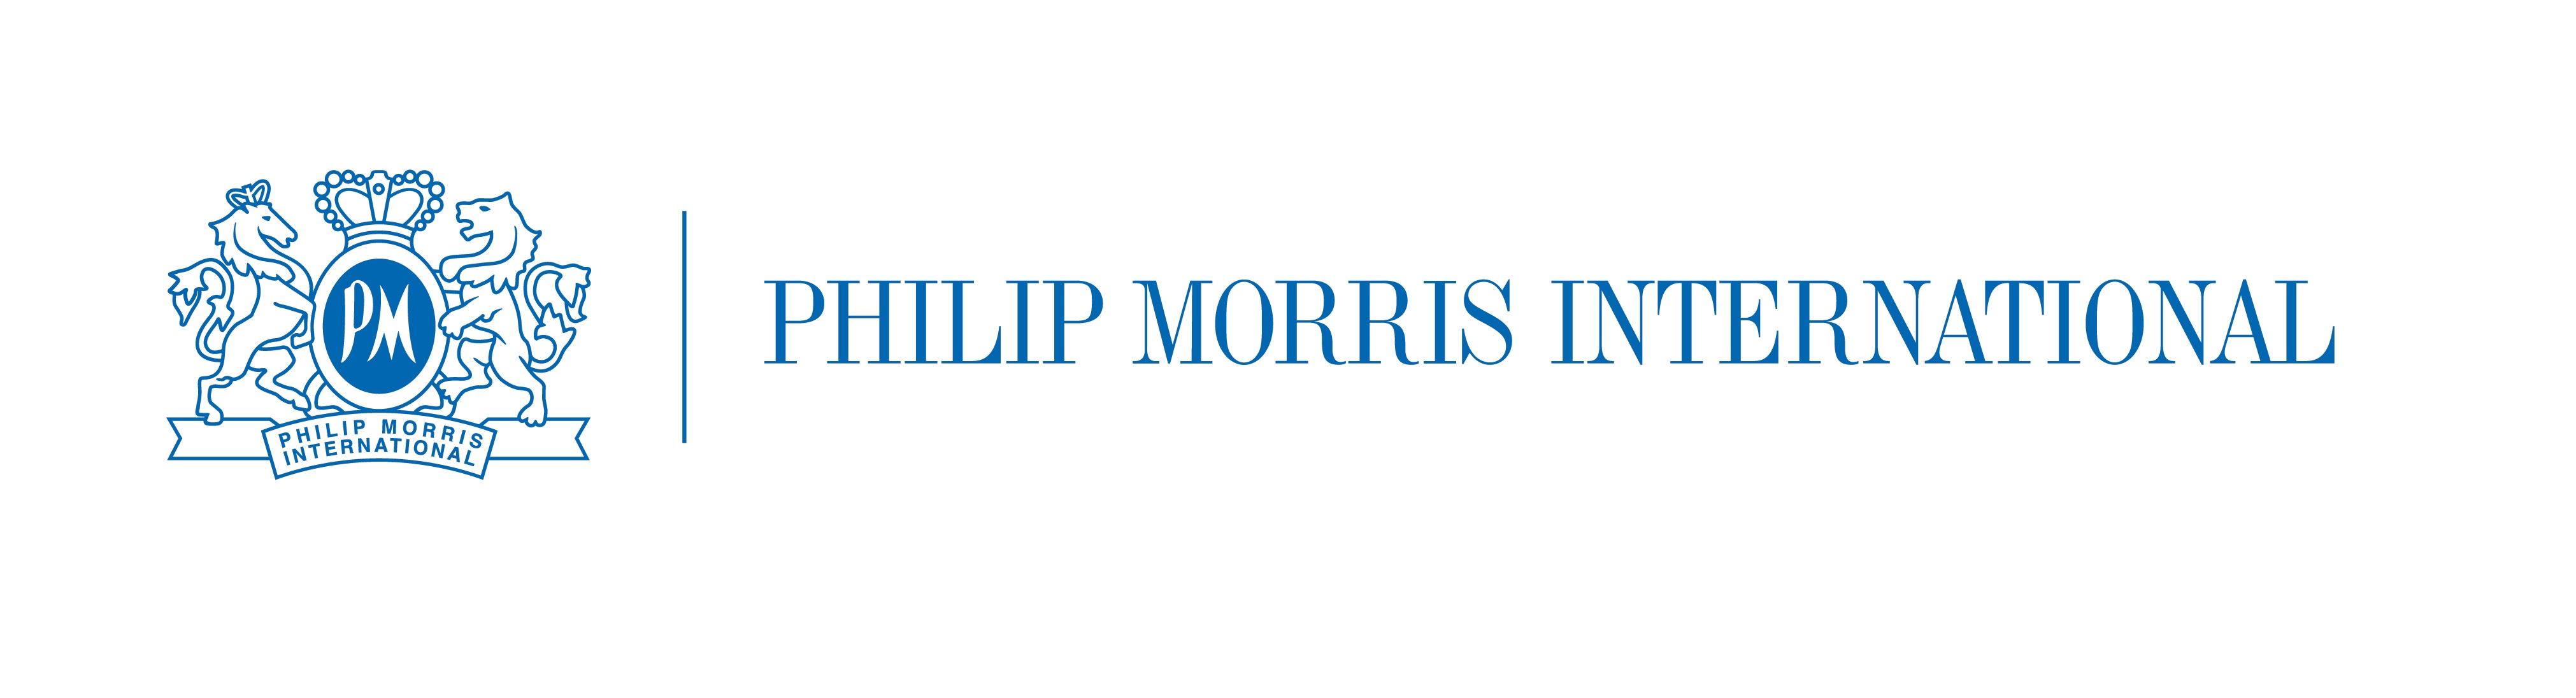 Сайт филип моррис. Philip Morris International логотип. Логотип Филип Моррис Ижора.